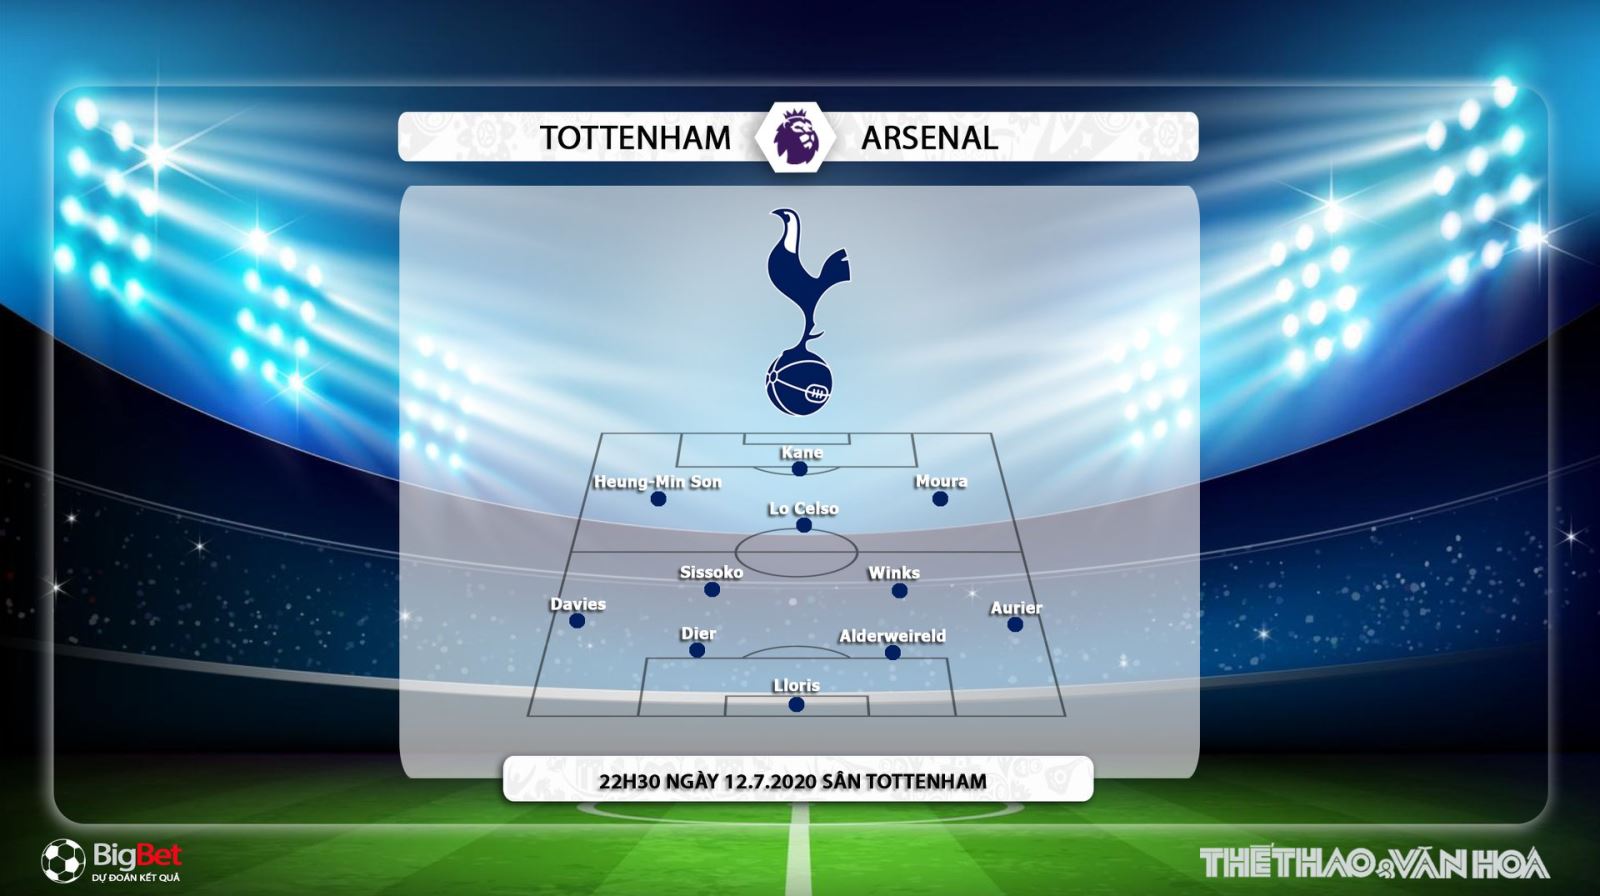 Tottenham vs Arsenal, Tottenham, Arsenal, nhận định bóng đá Tottenham vs Arsenal, kèo bóng đá, nhận định bóng đá, nhận định, dự đoán, trực tiếp bóng đá, lịch thi đấu bóng đá